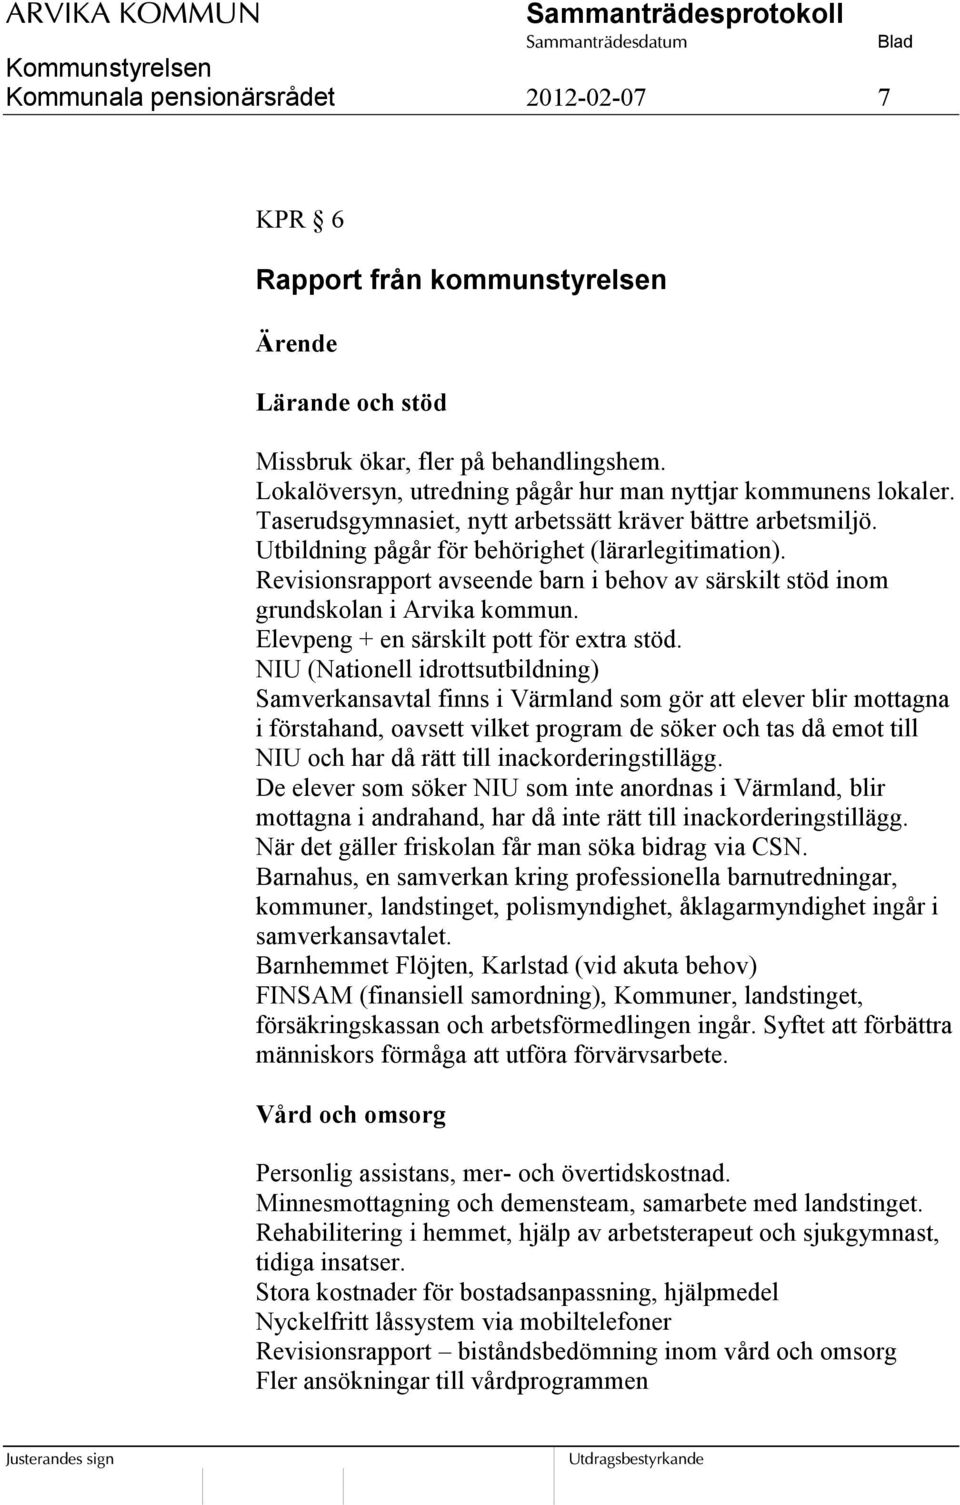 Revisionsrapport avseende barn i behov av särskilt stöd inom grundskolan i Arvika kommun. Elevpeng + en särskilt pott för extra stöd.